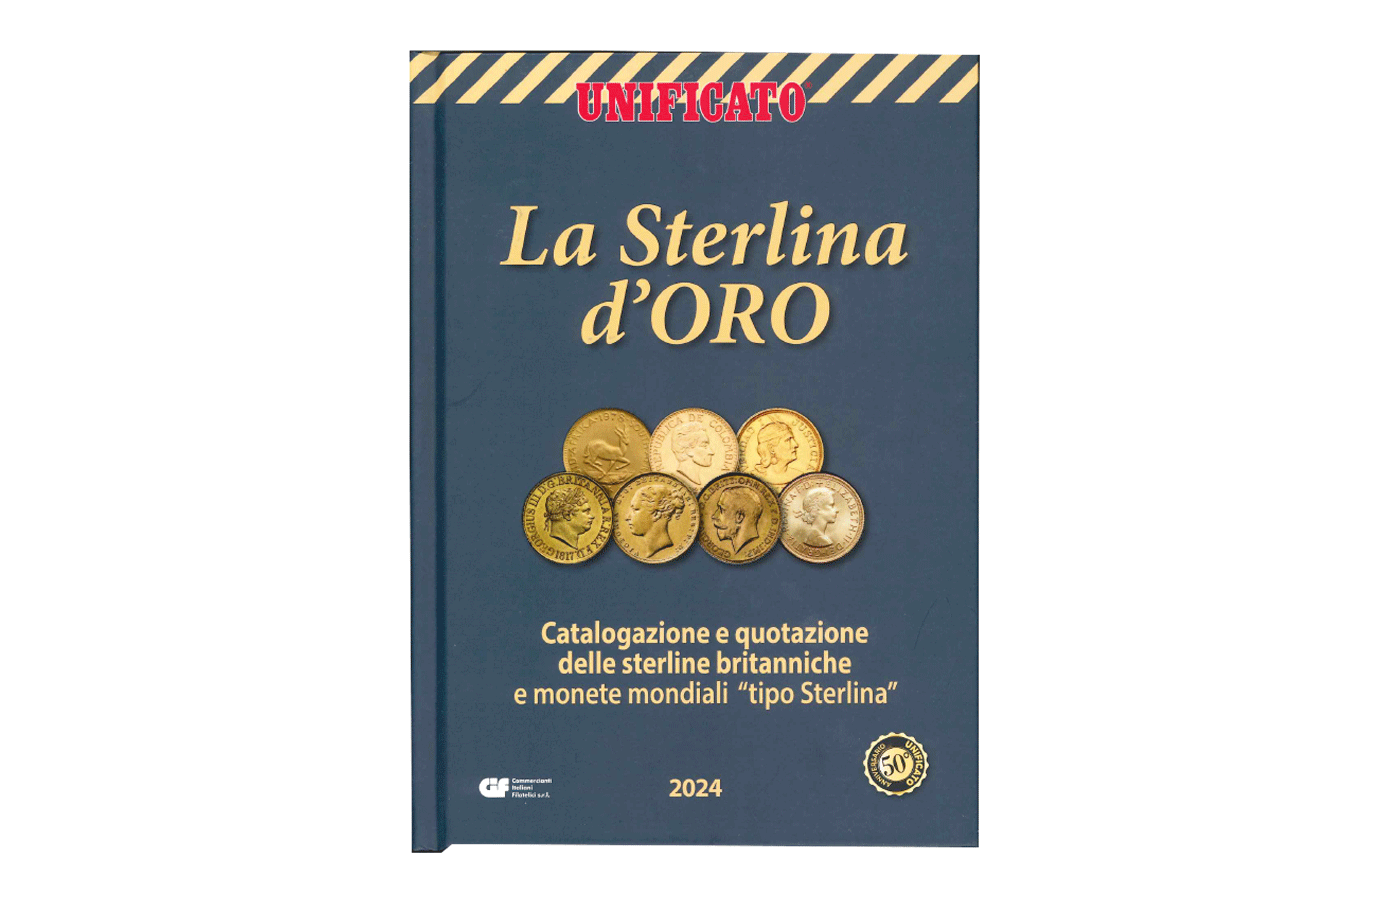 "La sterlina d'oro" - Catalogo e quotazione delle sterline britanniche e monete mondiali "tipo sterlina"